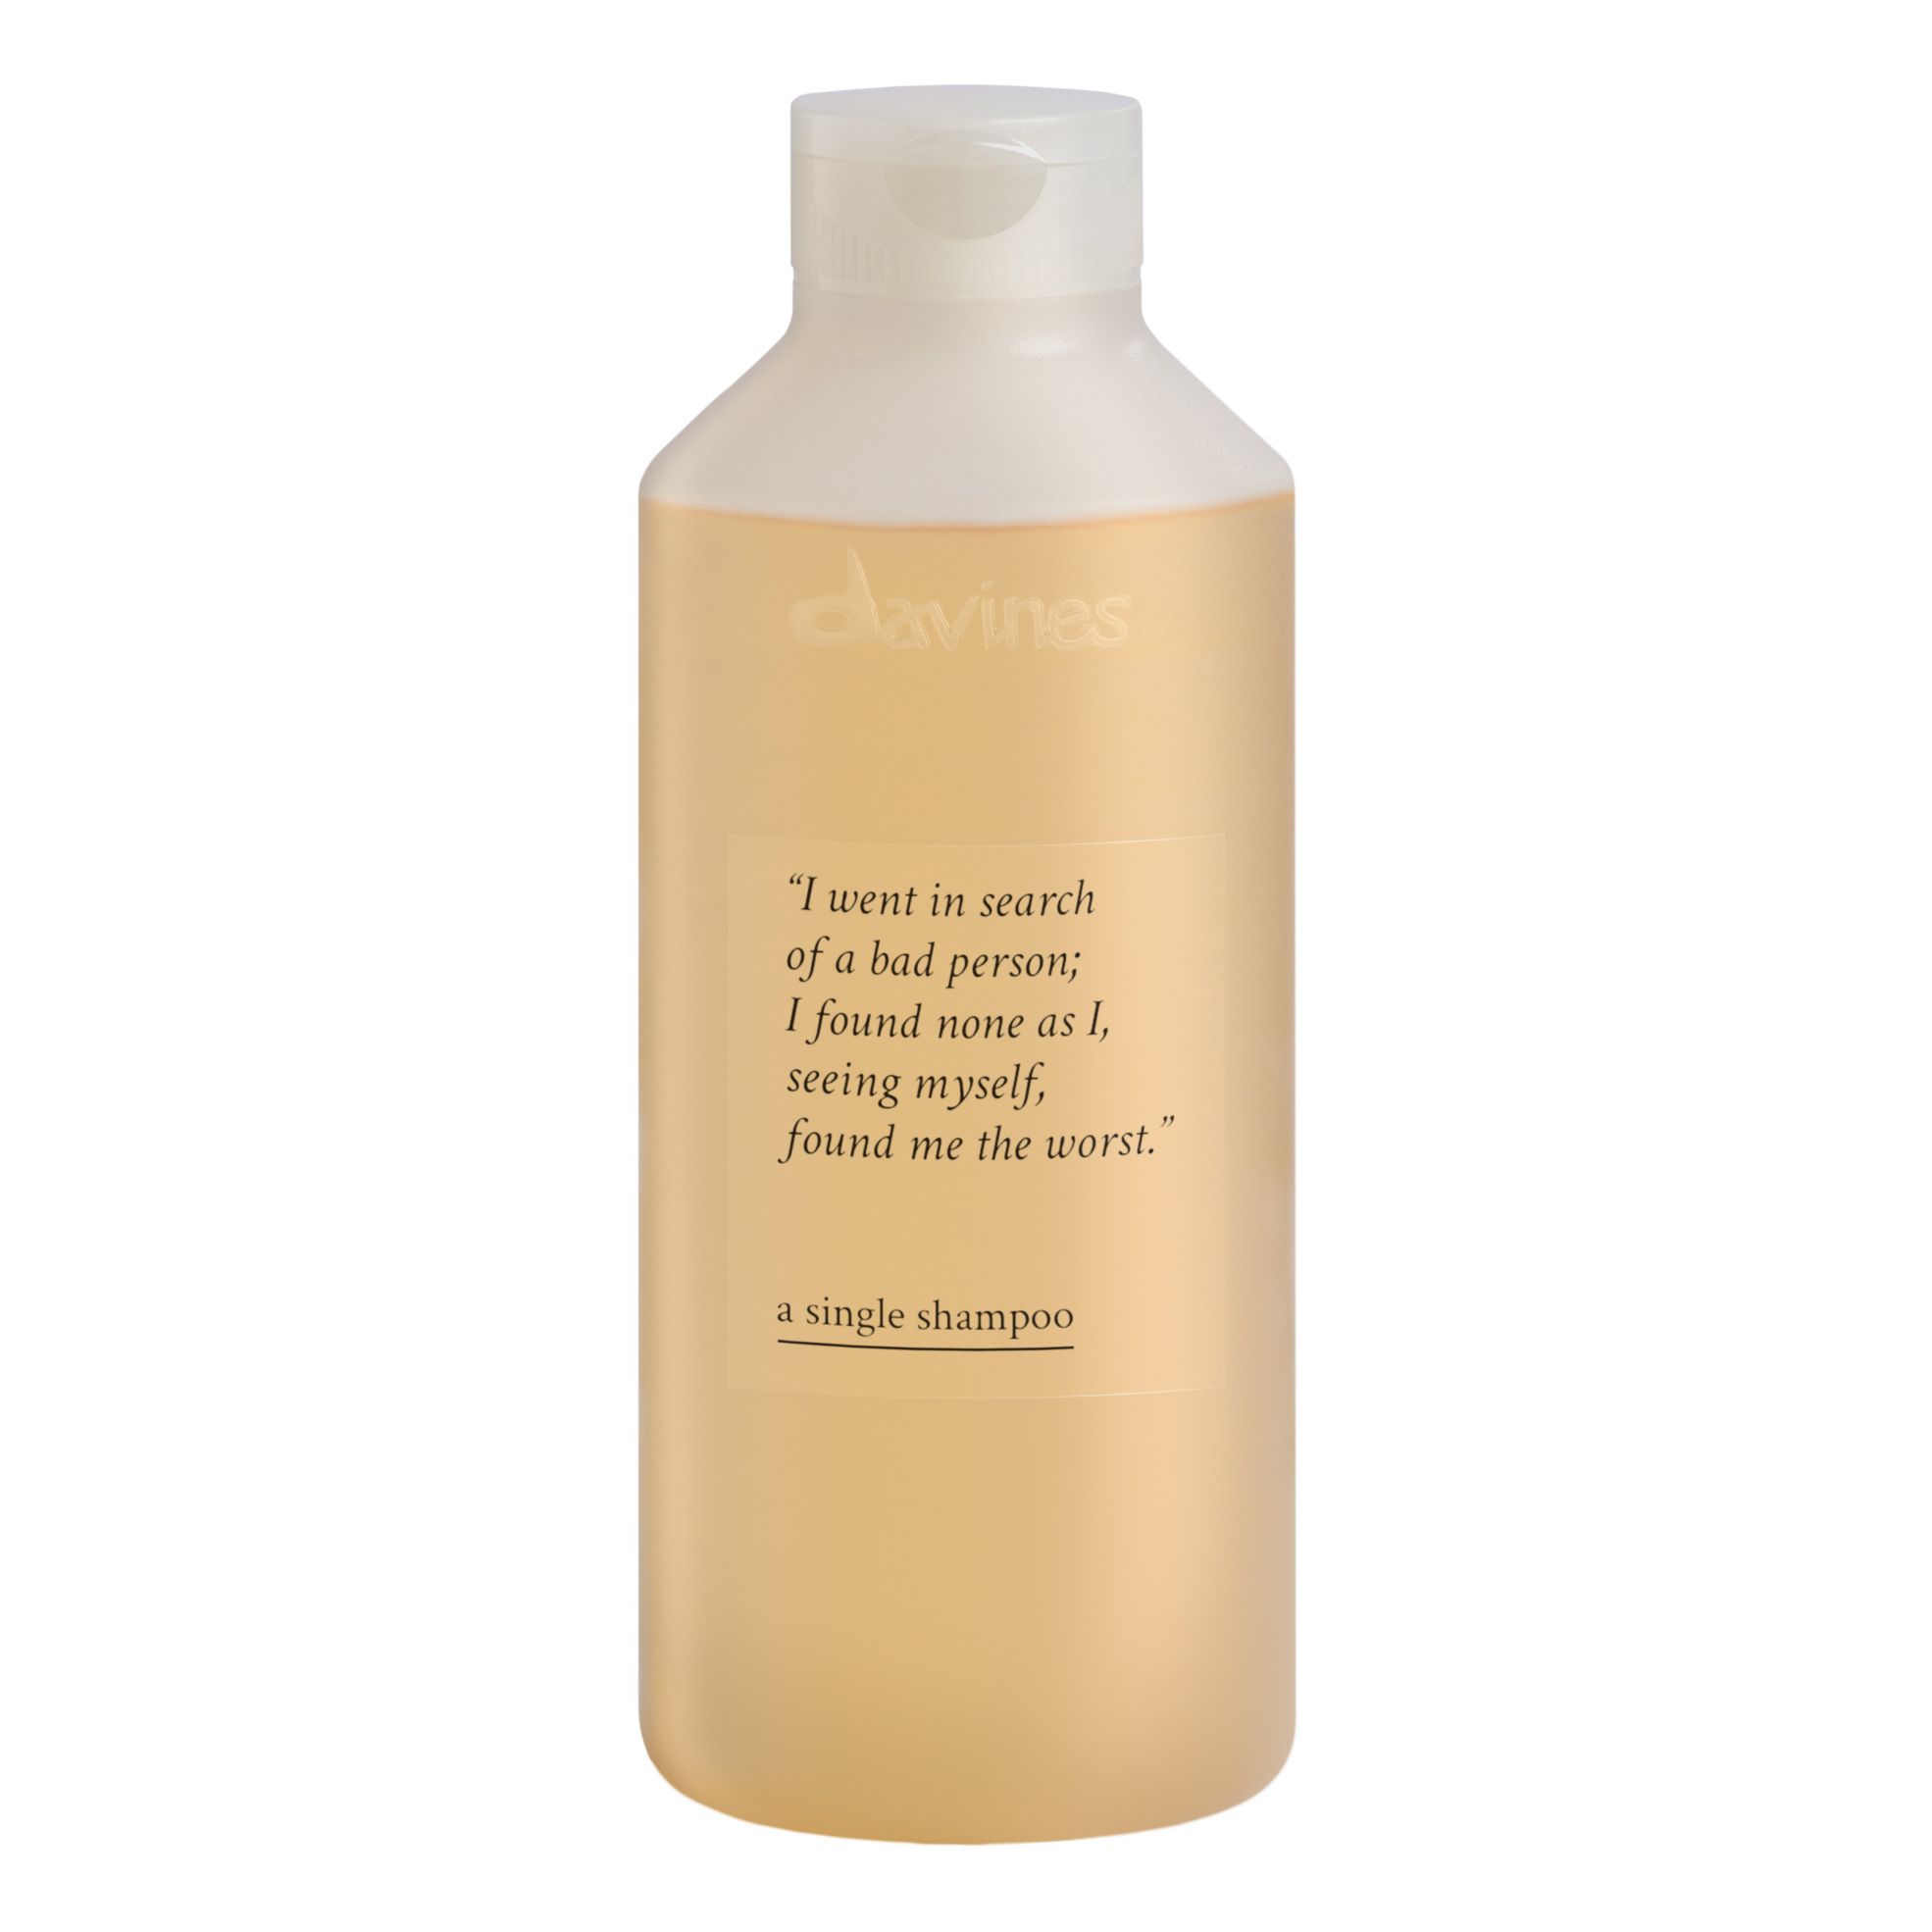 Davines - Shampoing pour tous types de cheveux A single shampoo -1L - Blanc